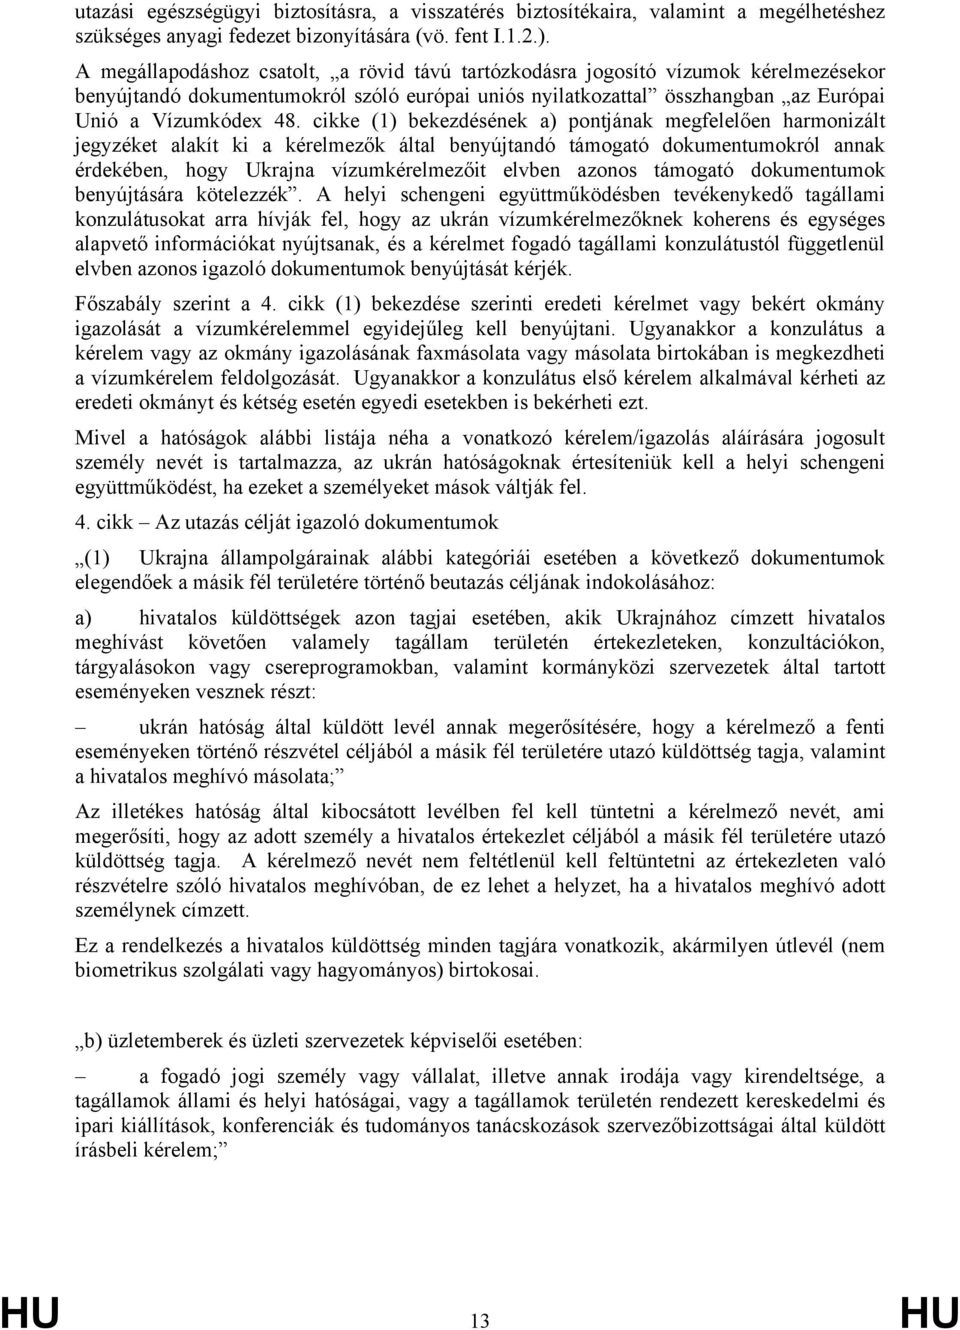 cikke (1) bekezdésének a) pontjának megfelelően harmonizált jegyzéket alakít ki a kérelmezők által benyújtandó támogató dokumentumokról annak érdekében, hogy Ukrajna vízumkérelmezőit elvben azonos